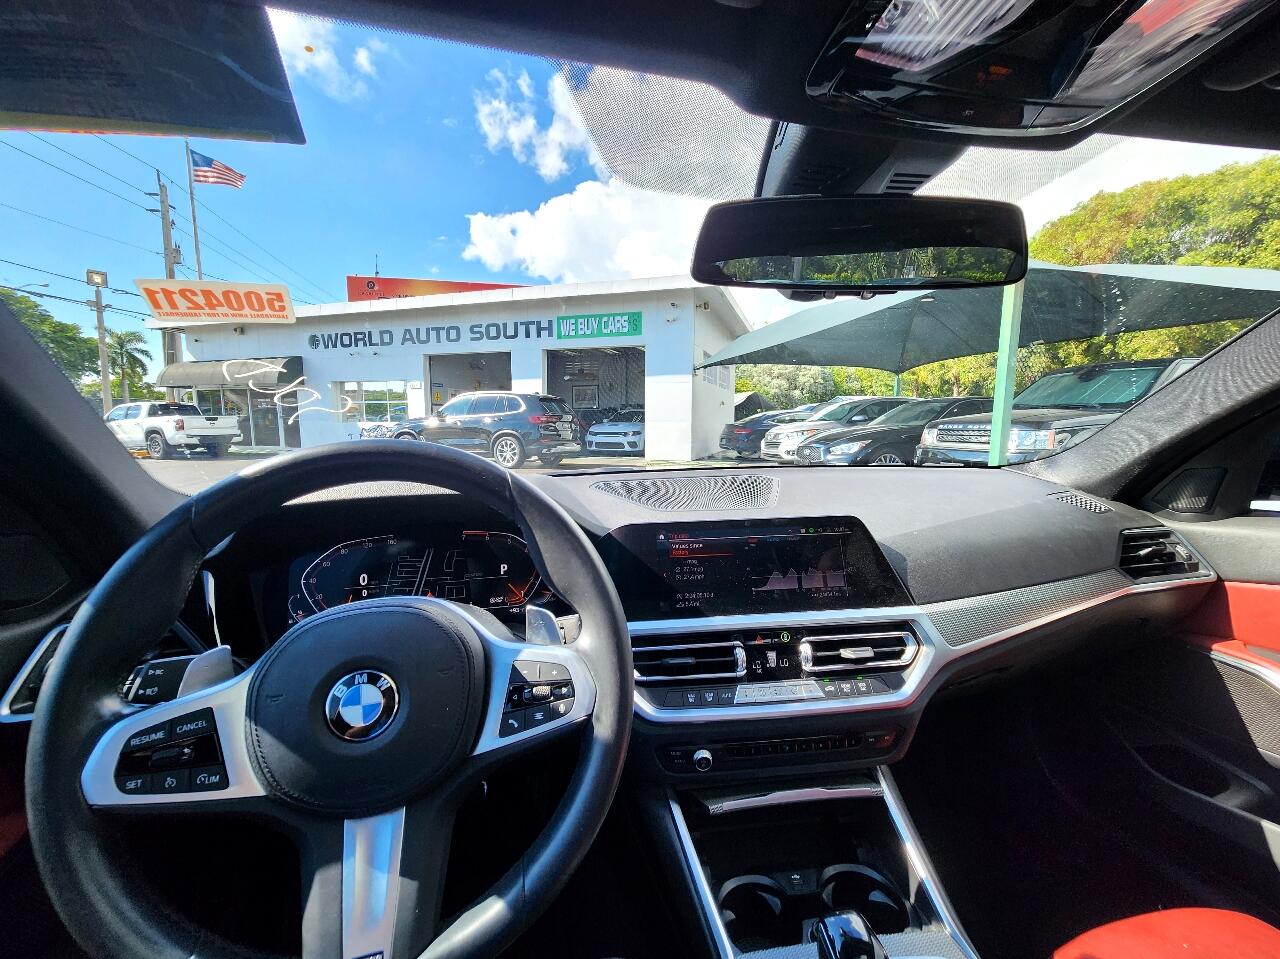 2022 BMW 330i Sedan - $36,999